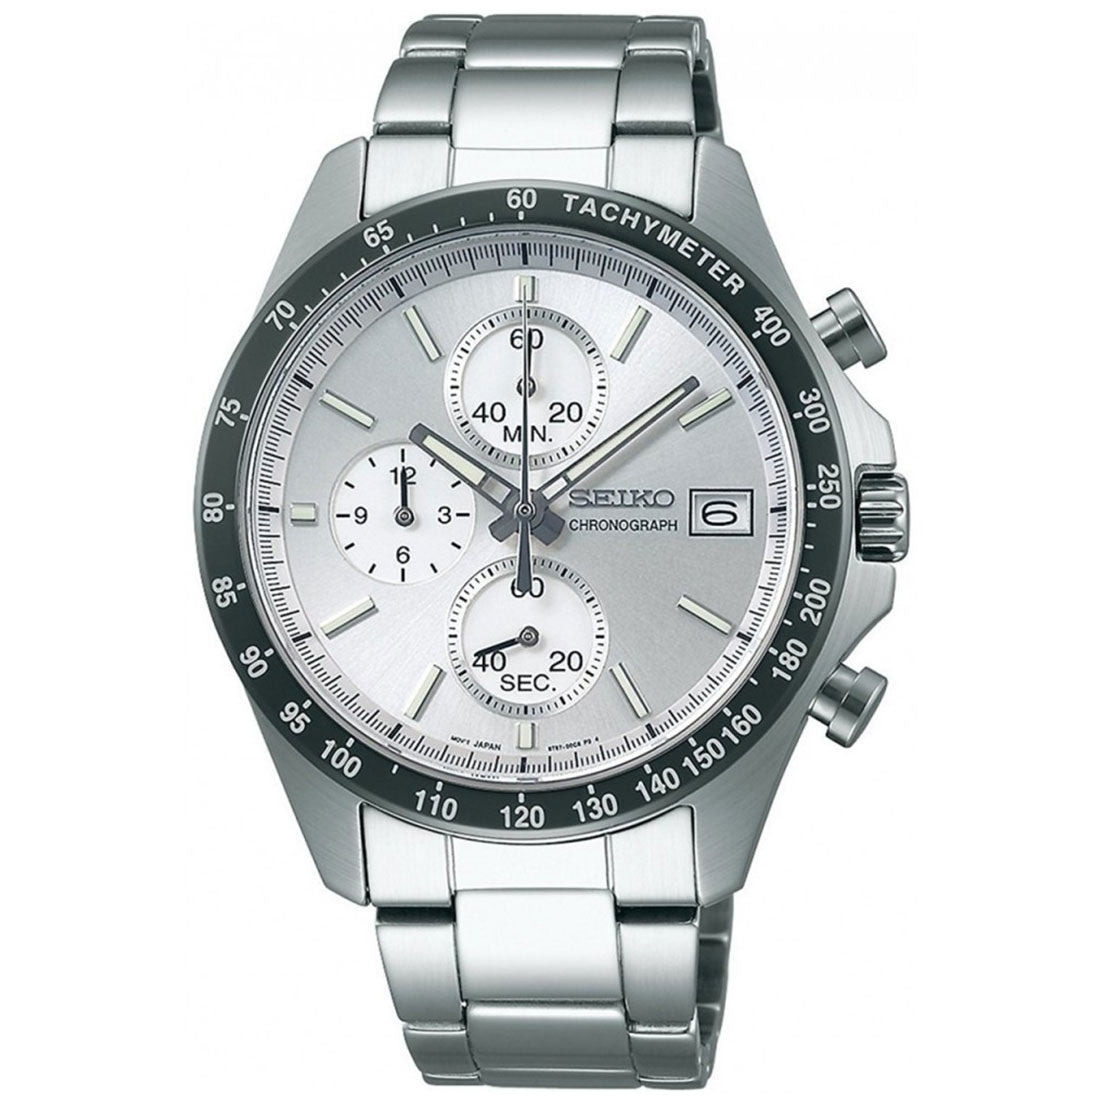 Seiko Spirit SBTR007 JDM Selection Silver Dial Chronograph Quartz Stainless Steel Watch -Seiko